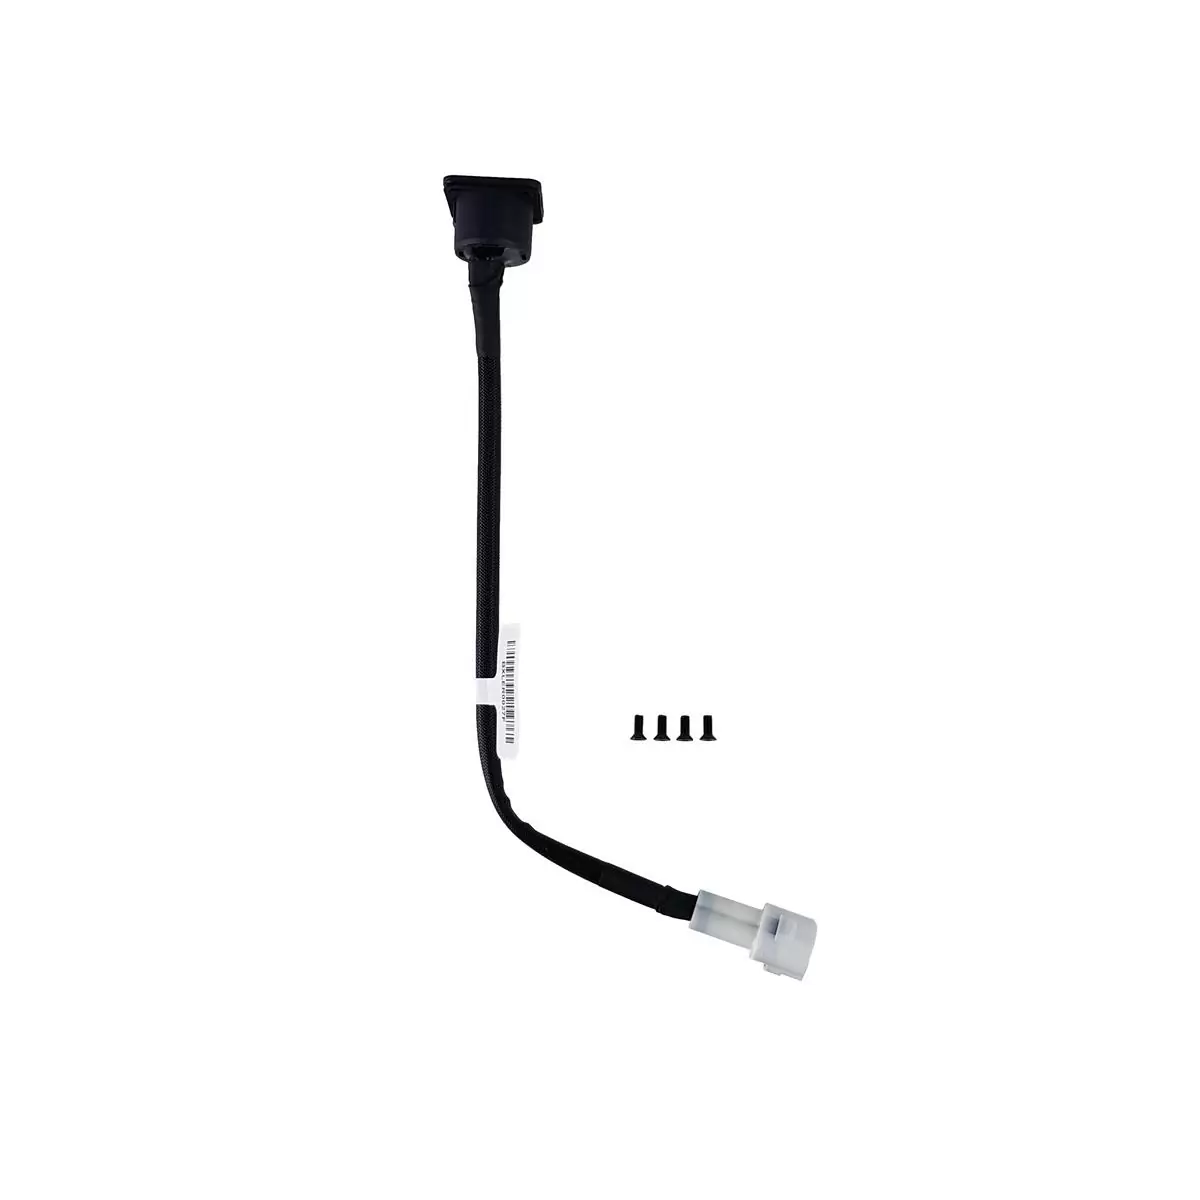 Cable cargador On-bike Simplo para AllMtn 1 - 2 , Fullseven - Fullnine 6/7 con batería de 630wh - image